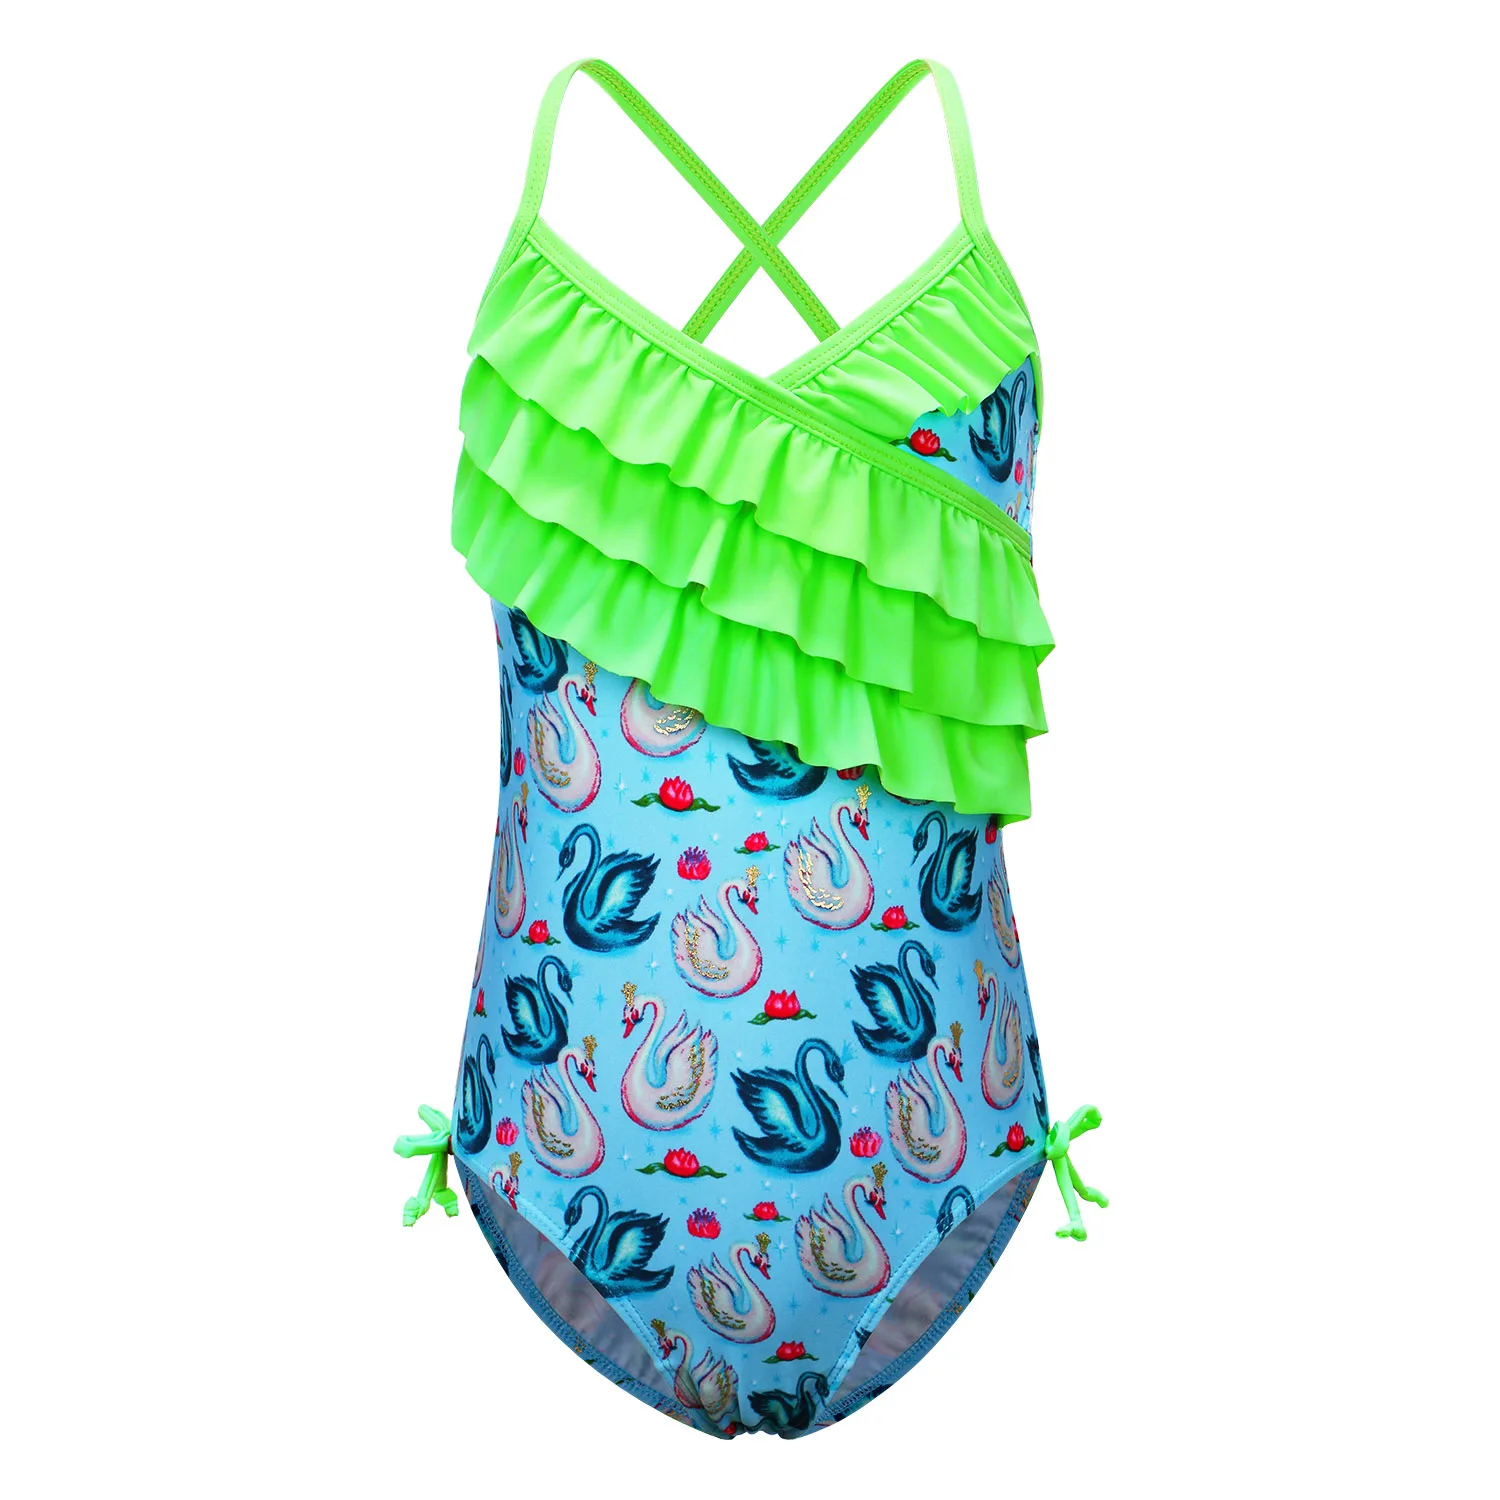 BAOHULU/детский купальник, От 4 до 12 лет, купальник с героями мультфильмов для девочек, детский купальный костюм с листьями лотоса, пляжный купальный костюм для девочек